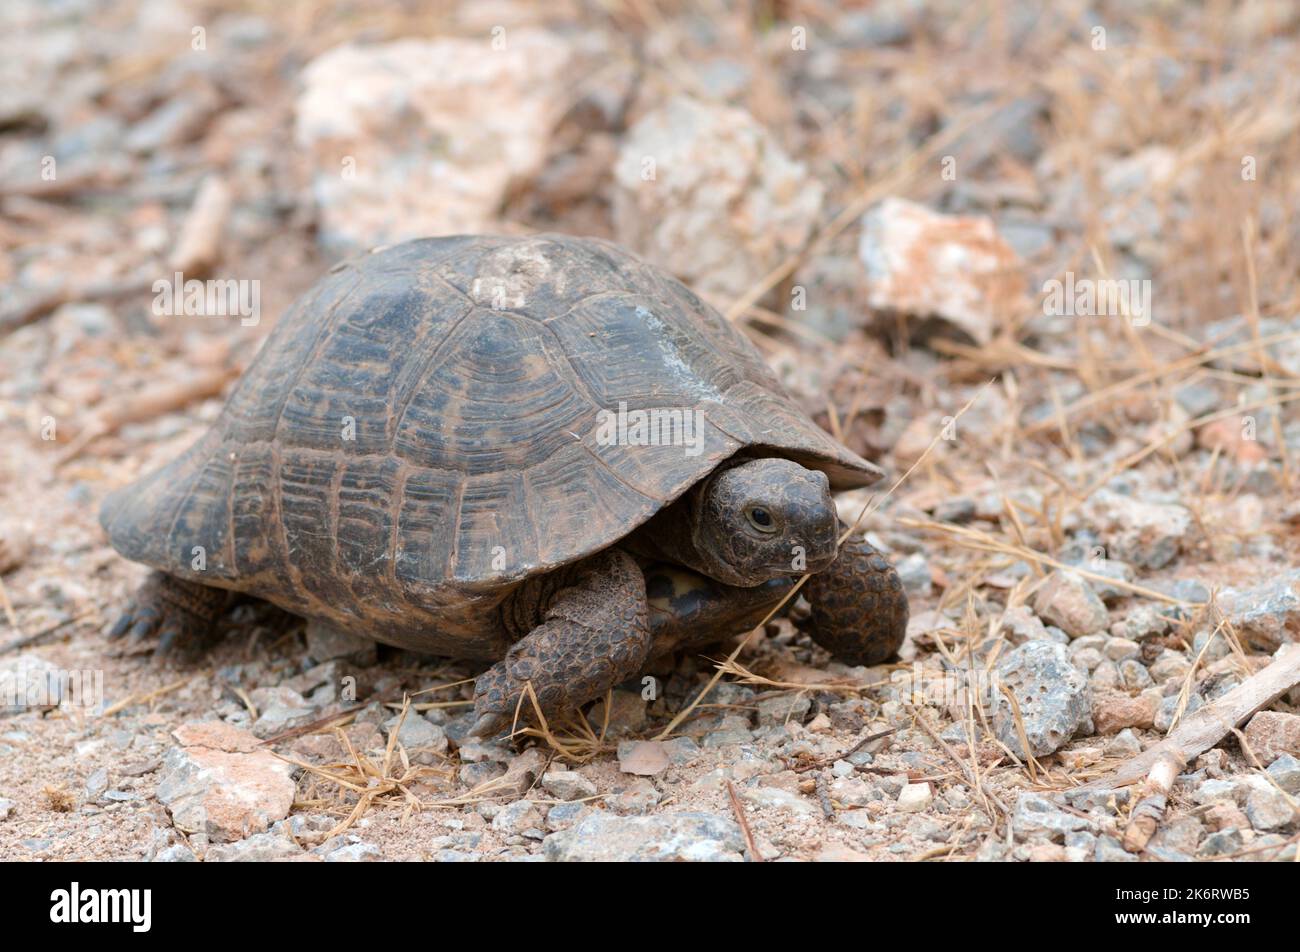 Tortoise on a mountain road Stock Photo